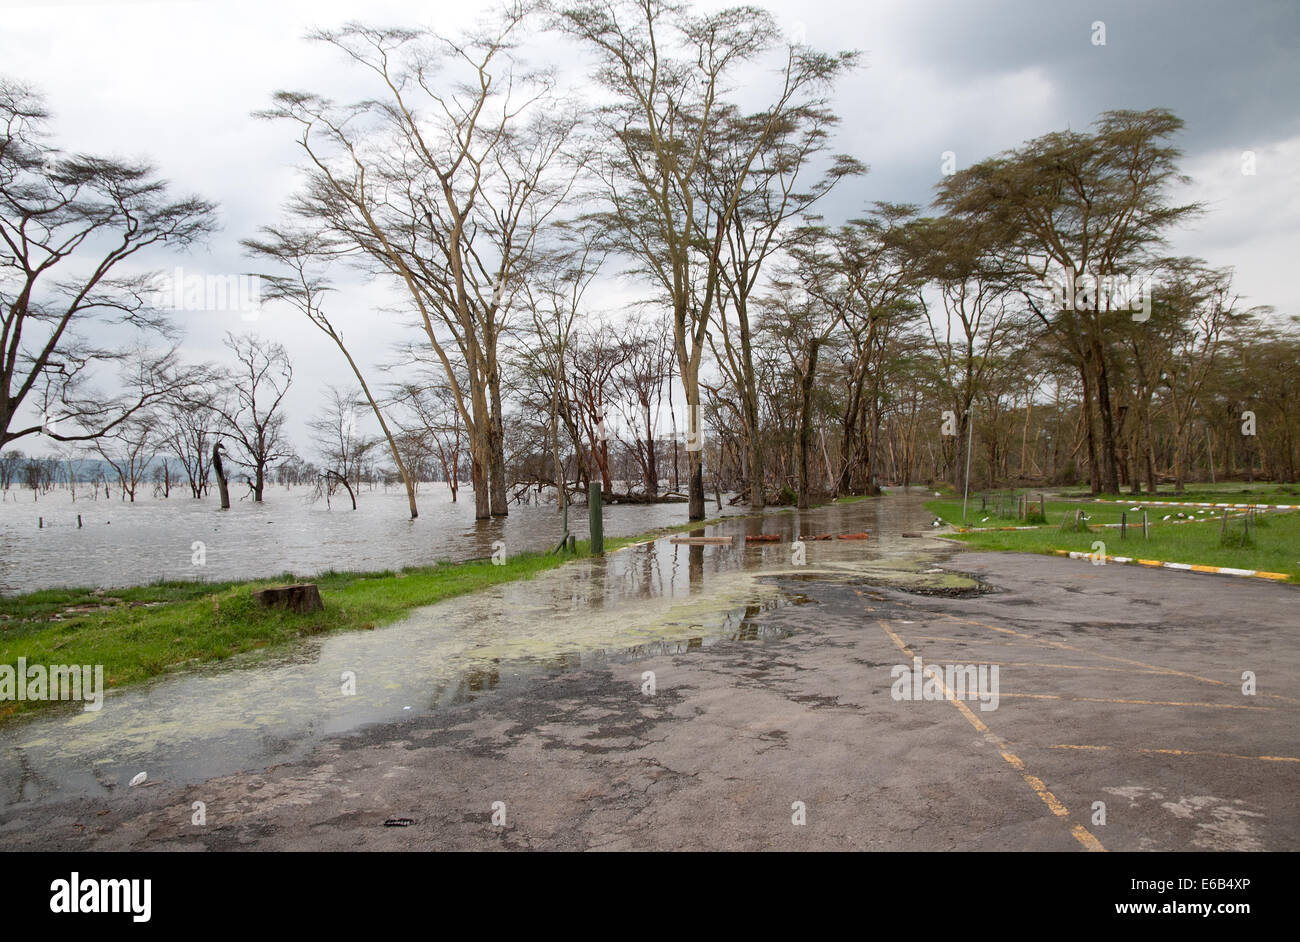 Route fermée en raison des niveaux des lacs et des inondations à l'entrée du Parc National du lac Nakuru Kenya Afrique de l'Est Banque D'Images